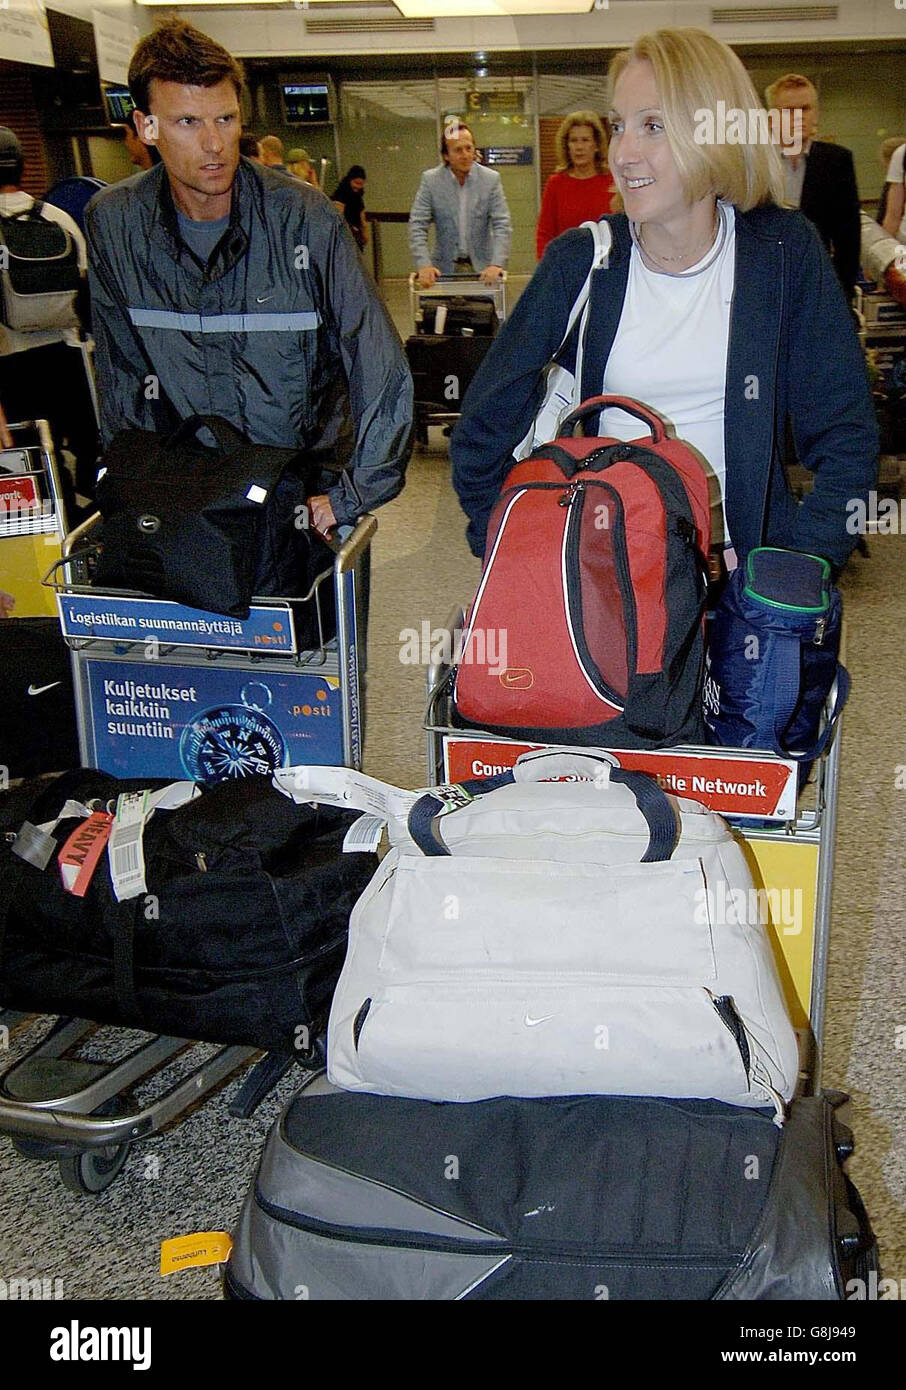 L'athlète britannique Paula Radcliffe et son mari Gary Lough arrivent à l'aéroport d'Helsinki avant les championnats du monde d'athlétisme qui commencent samedi. Banque D'Images